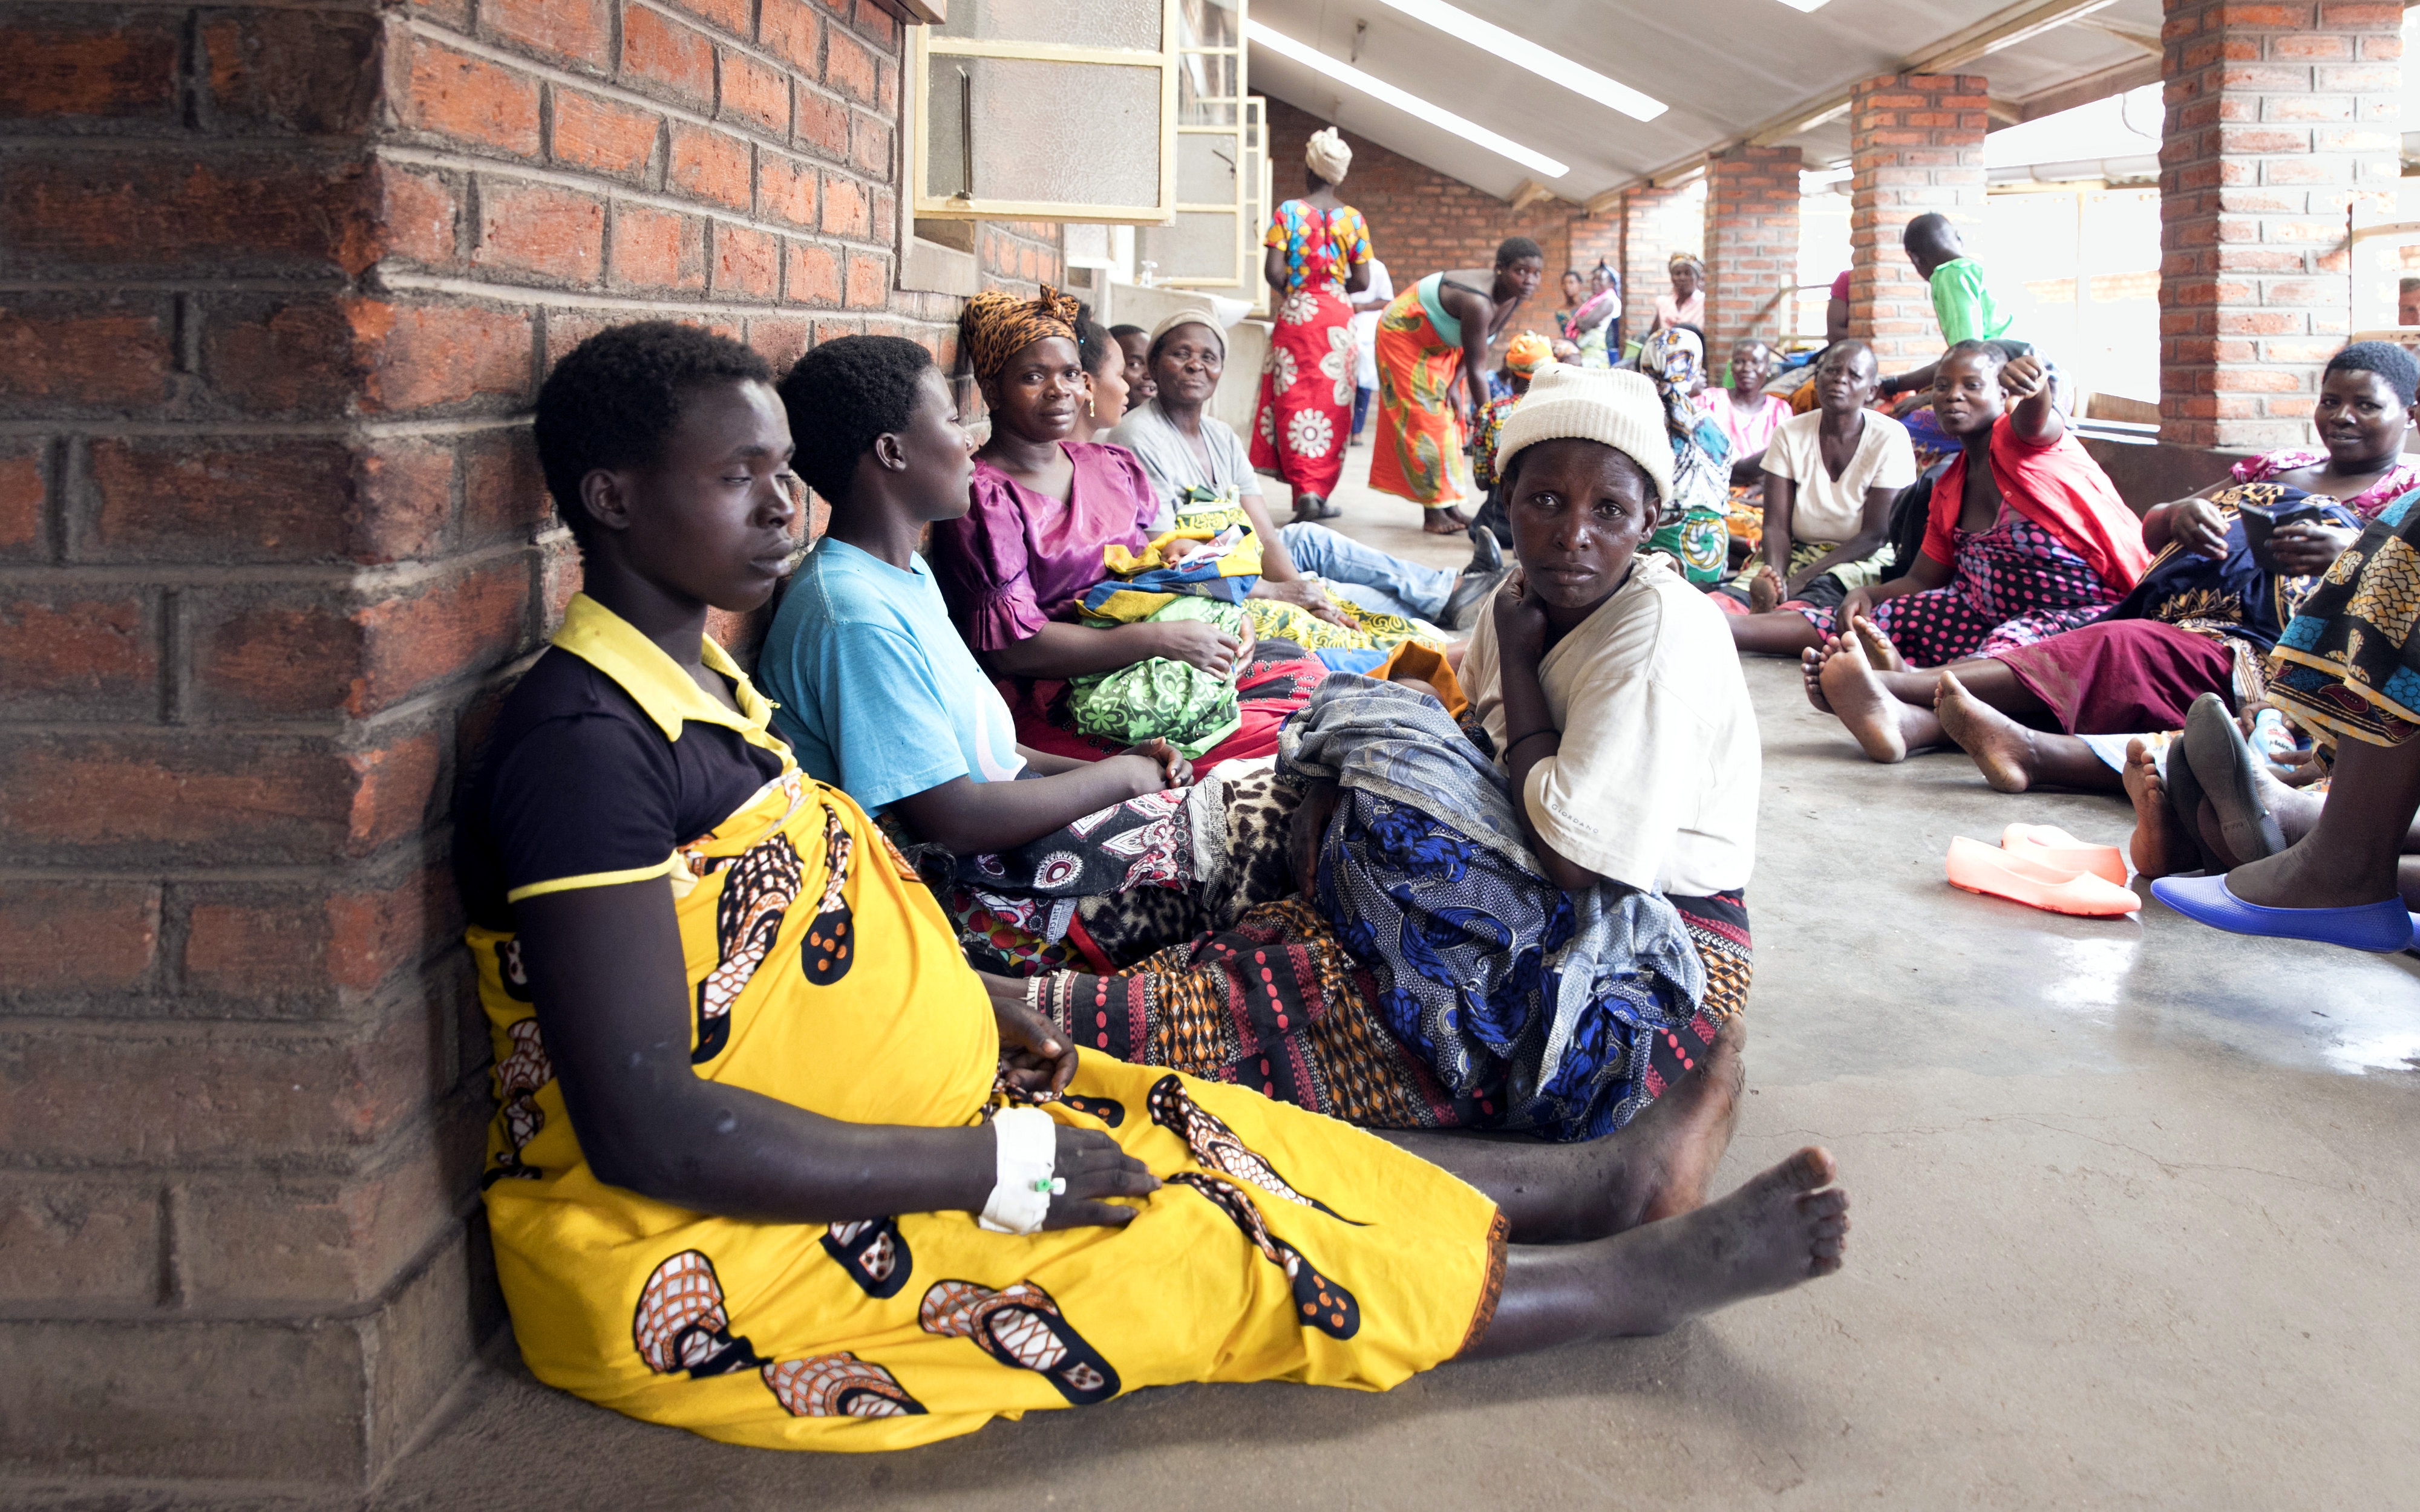 Wartende Patientinnen in der Geburtsstation des Nkhoma-Krankenhauses in Malawi. Zahlreiche Frauen, manche von ihnen sichtbar schwanger, sitzen auf dem Boden einer langgestreckten Veranda. 